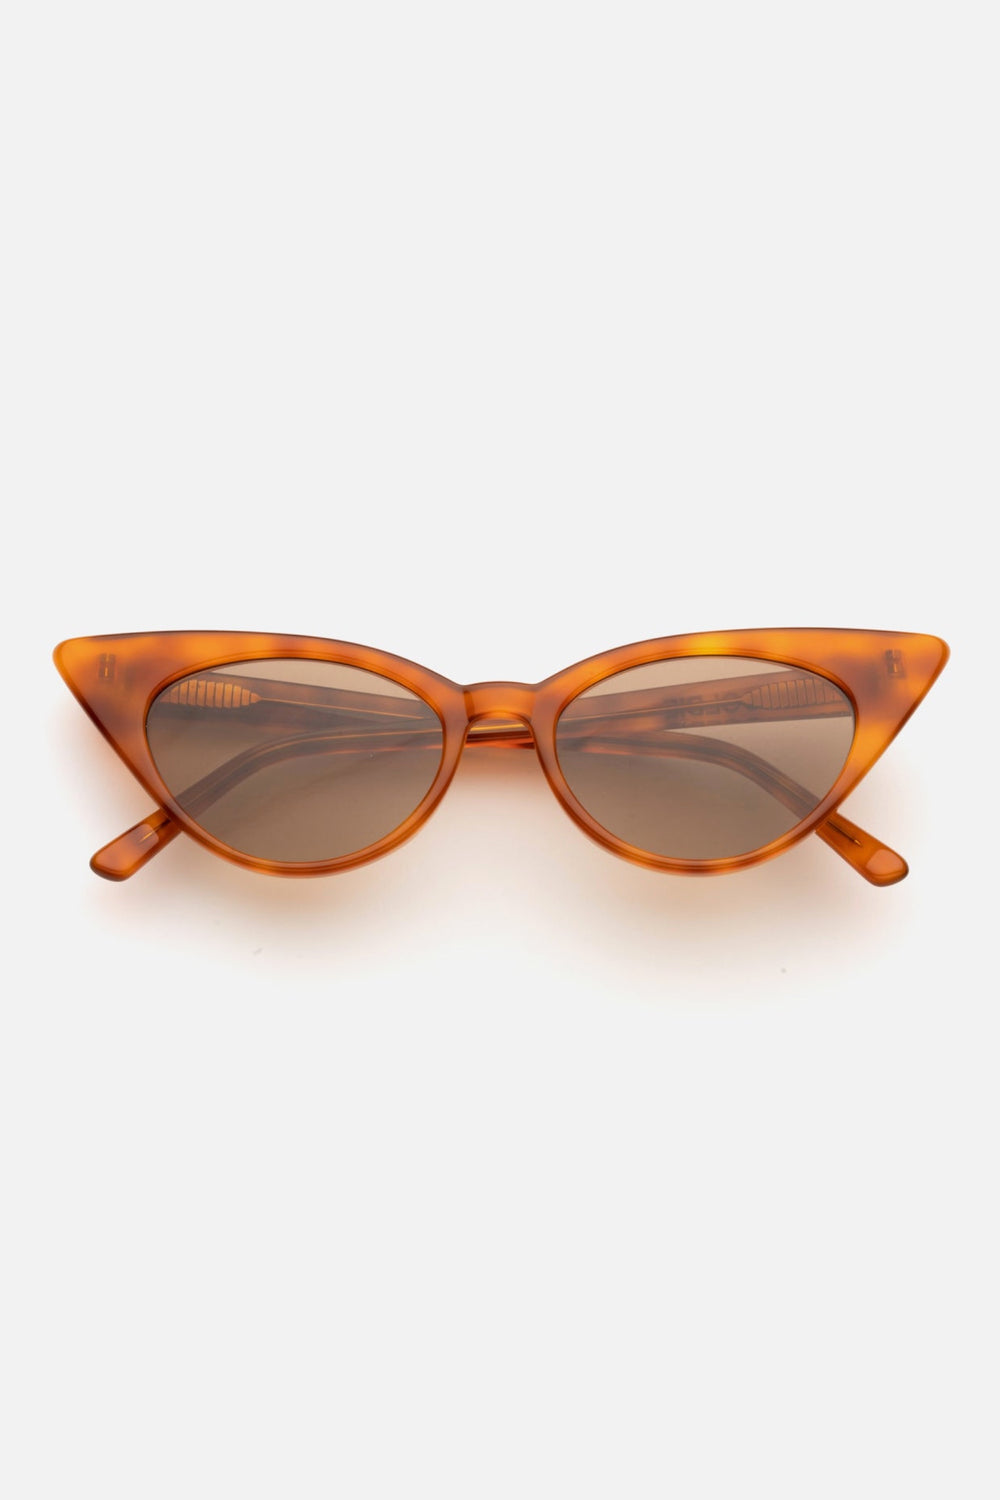 Maple Brigette Sunglasses